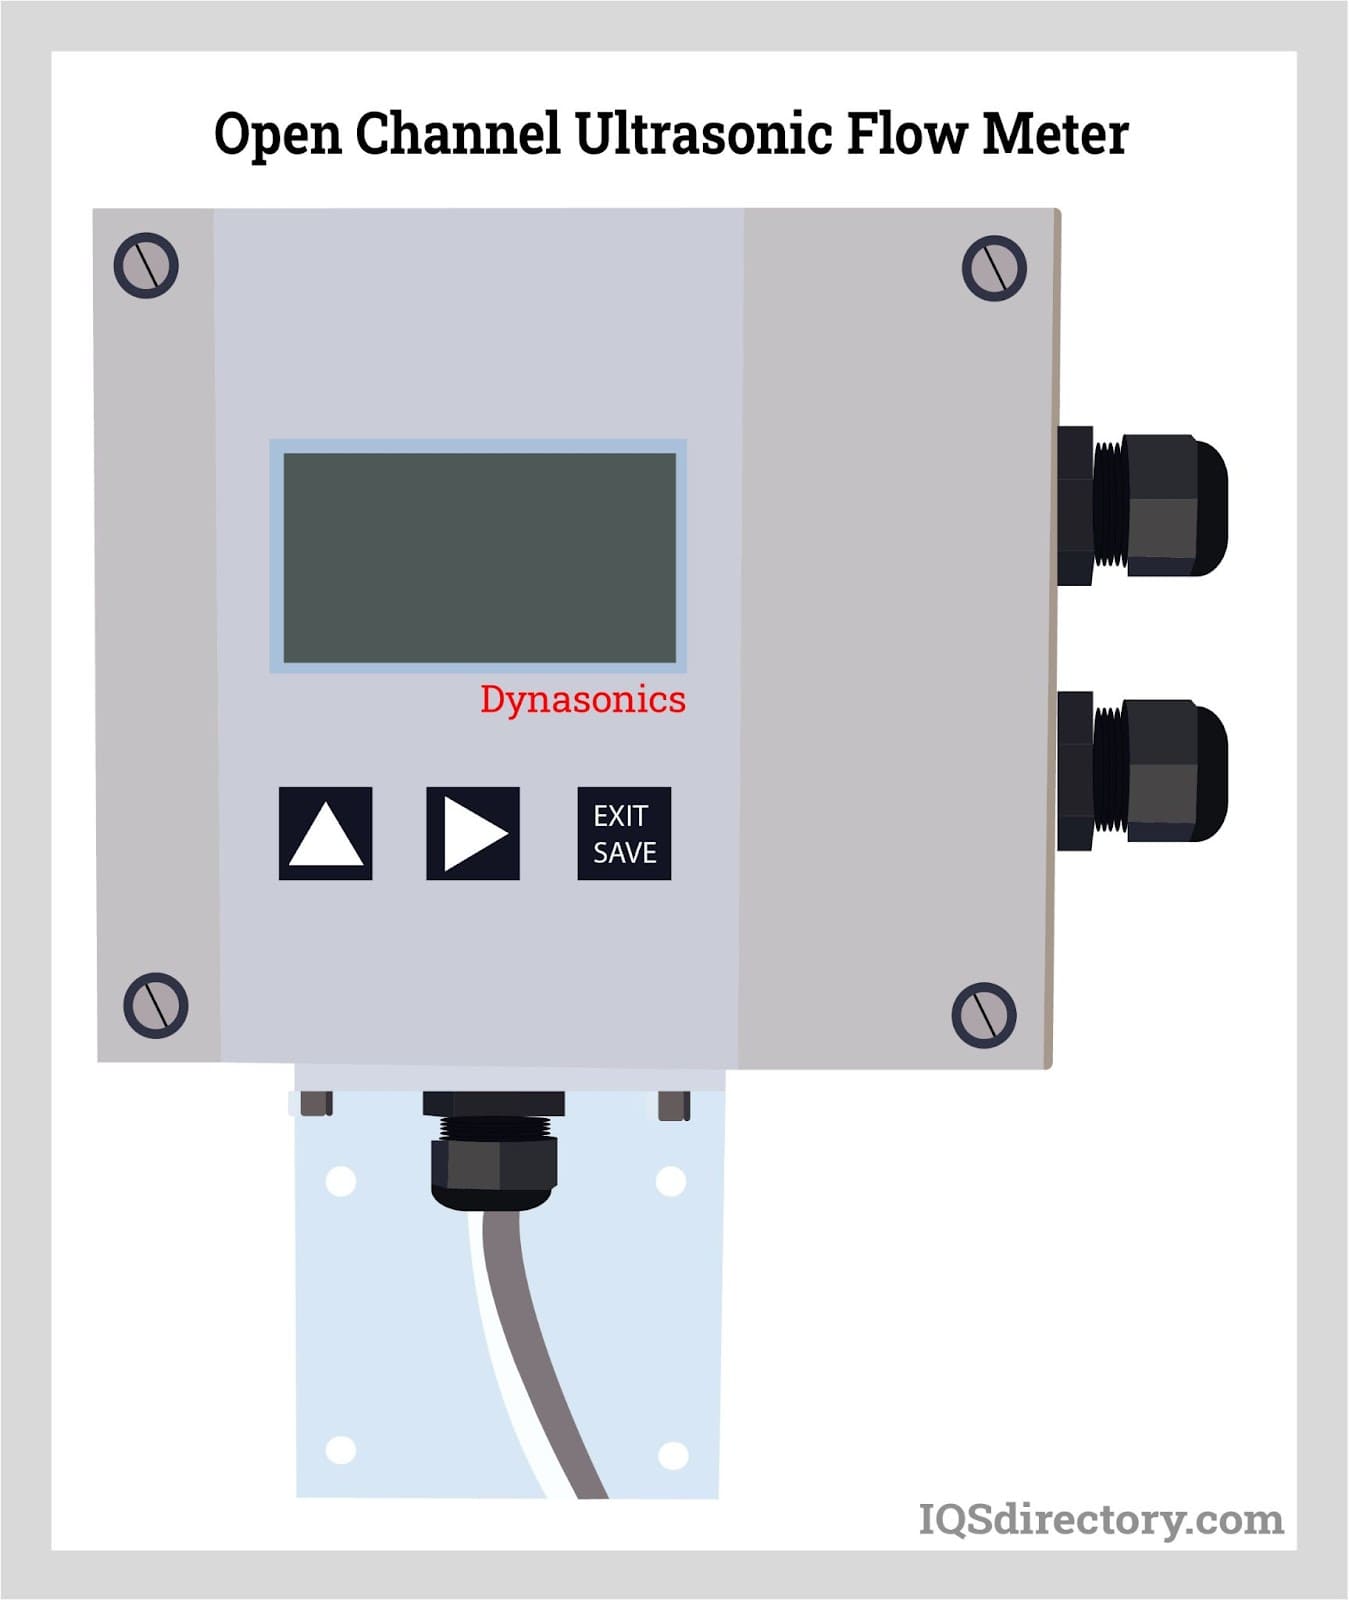 Open Channel Ultrasonic Flow Meter